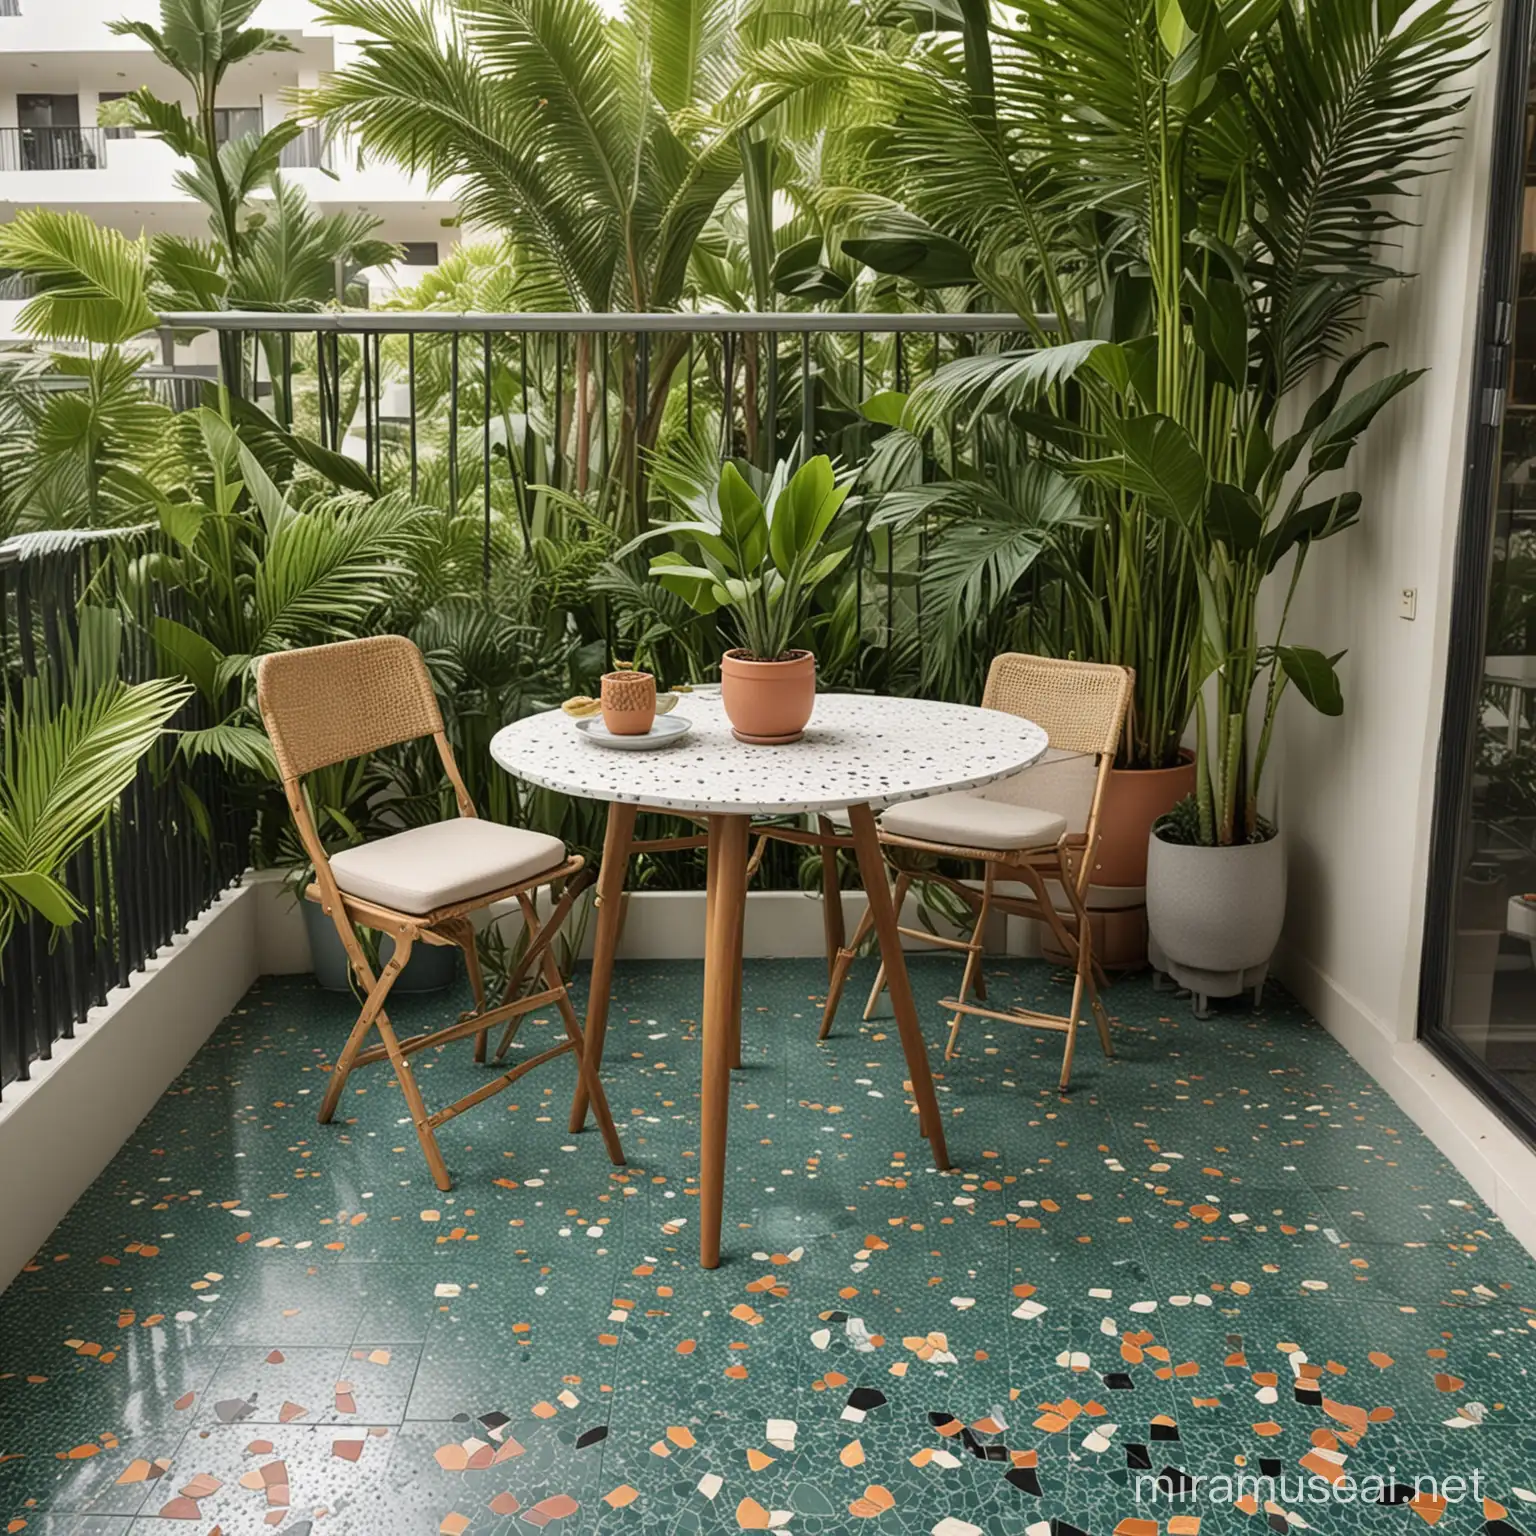 Sleek Mid Century Modern Balcony Oasis with Terrazzo Floor